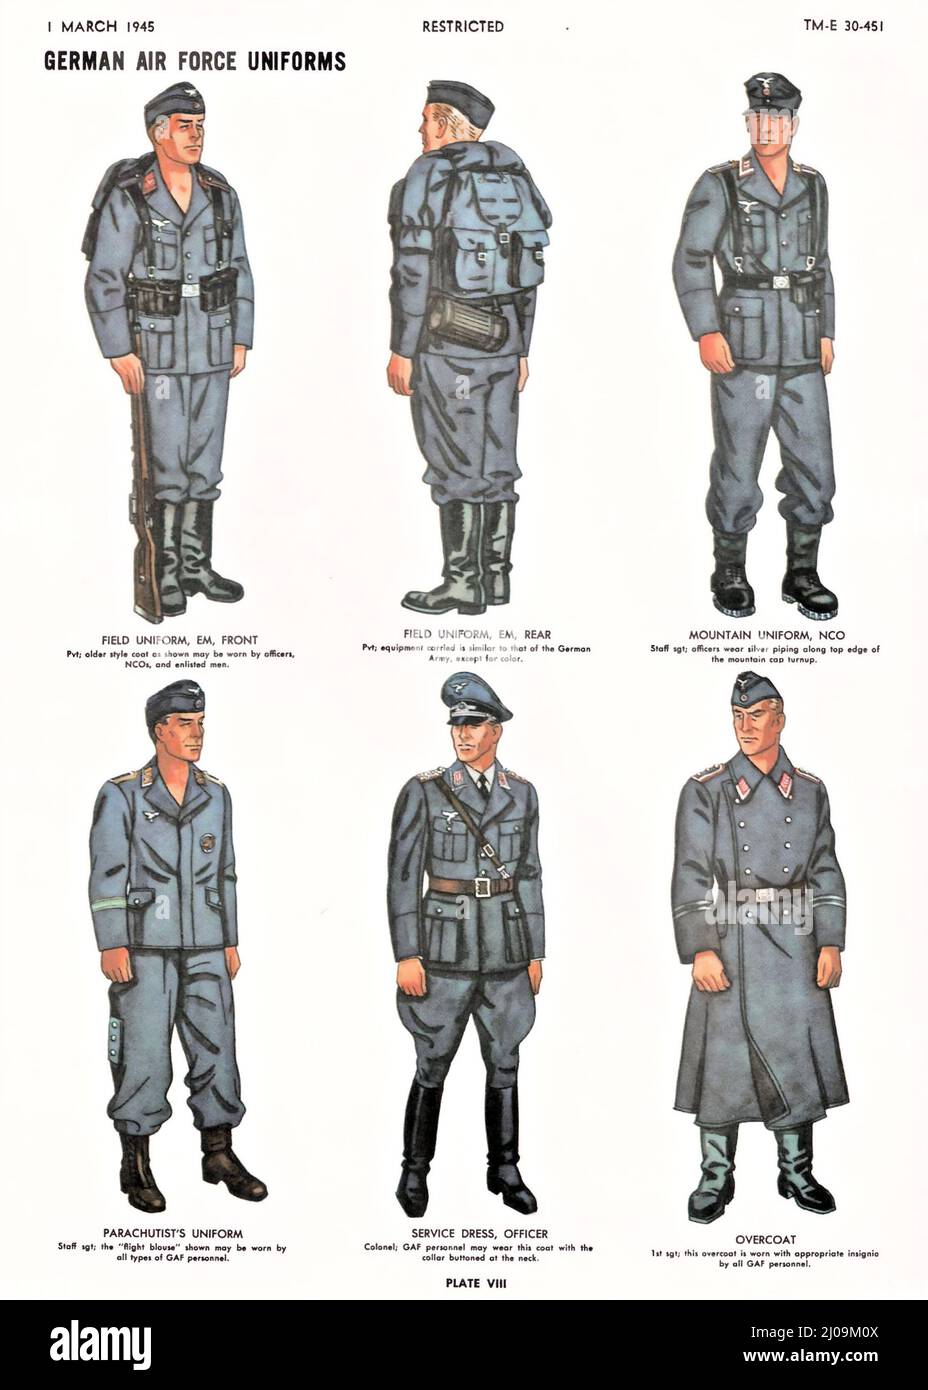 Manuale sulle forze militari tedesche da parte del Dipartimento di Guerra degli Stati Uniti, marzo 1945 - uniformi delle forze aeree tedesche / Luftwaffe Foto Stock